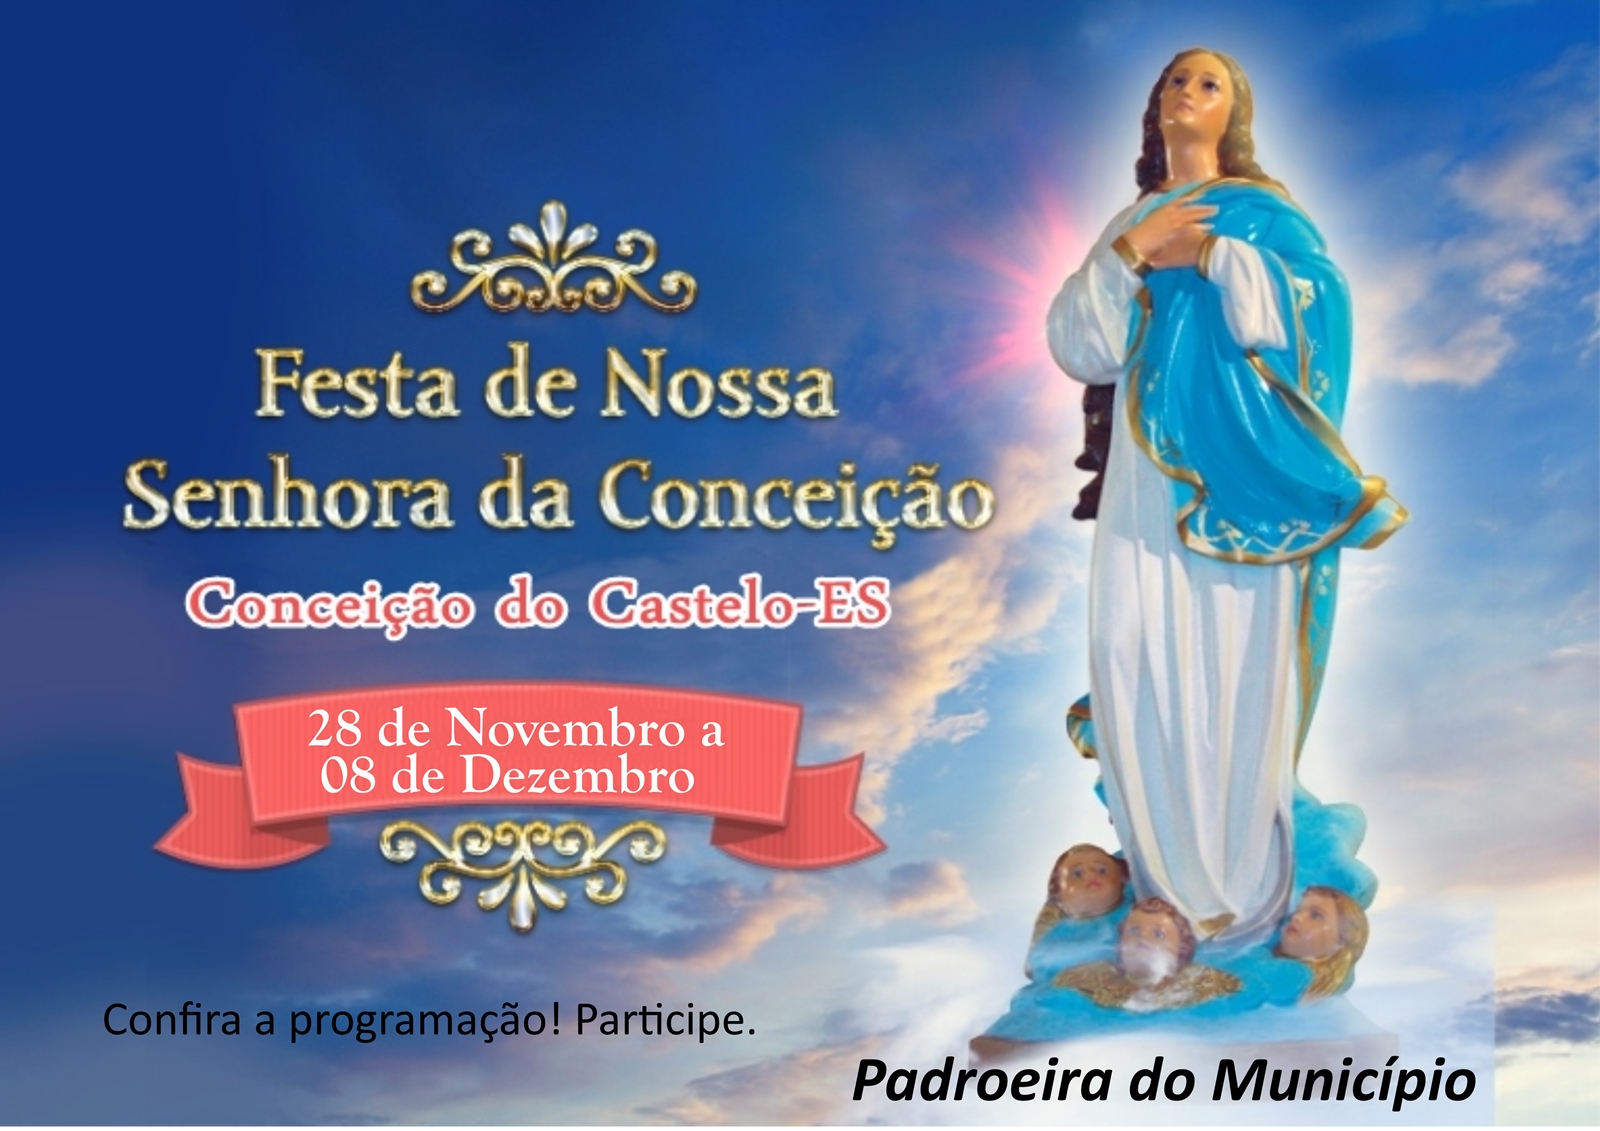 Programação da Festa de Nossa Senhora da Conceição e Padroeira de Conceição do Castelo, confira...